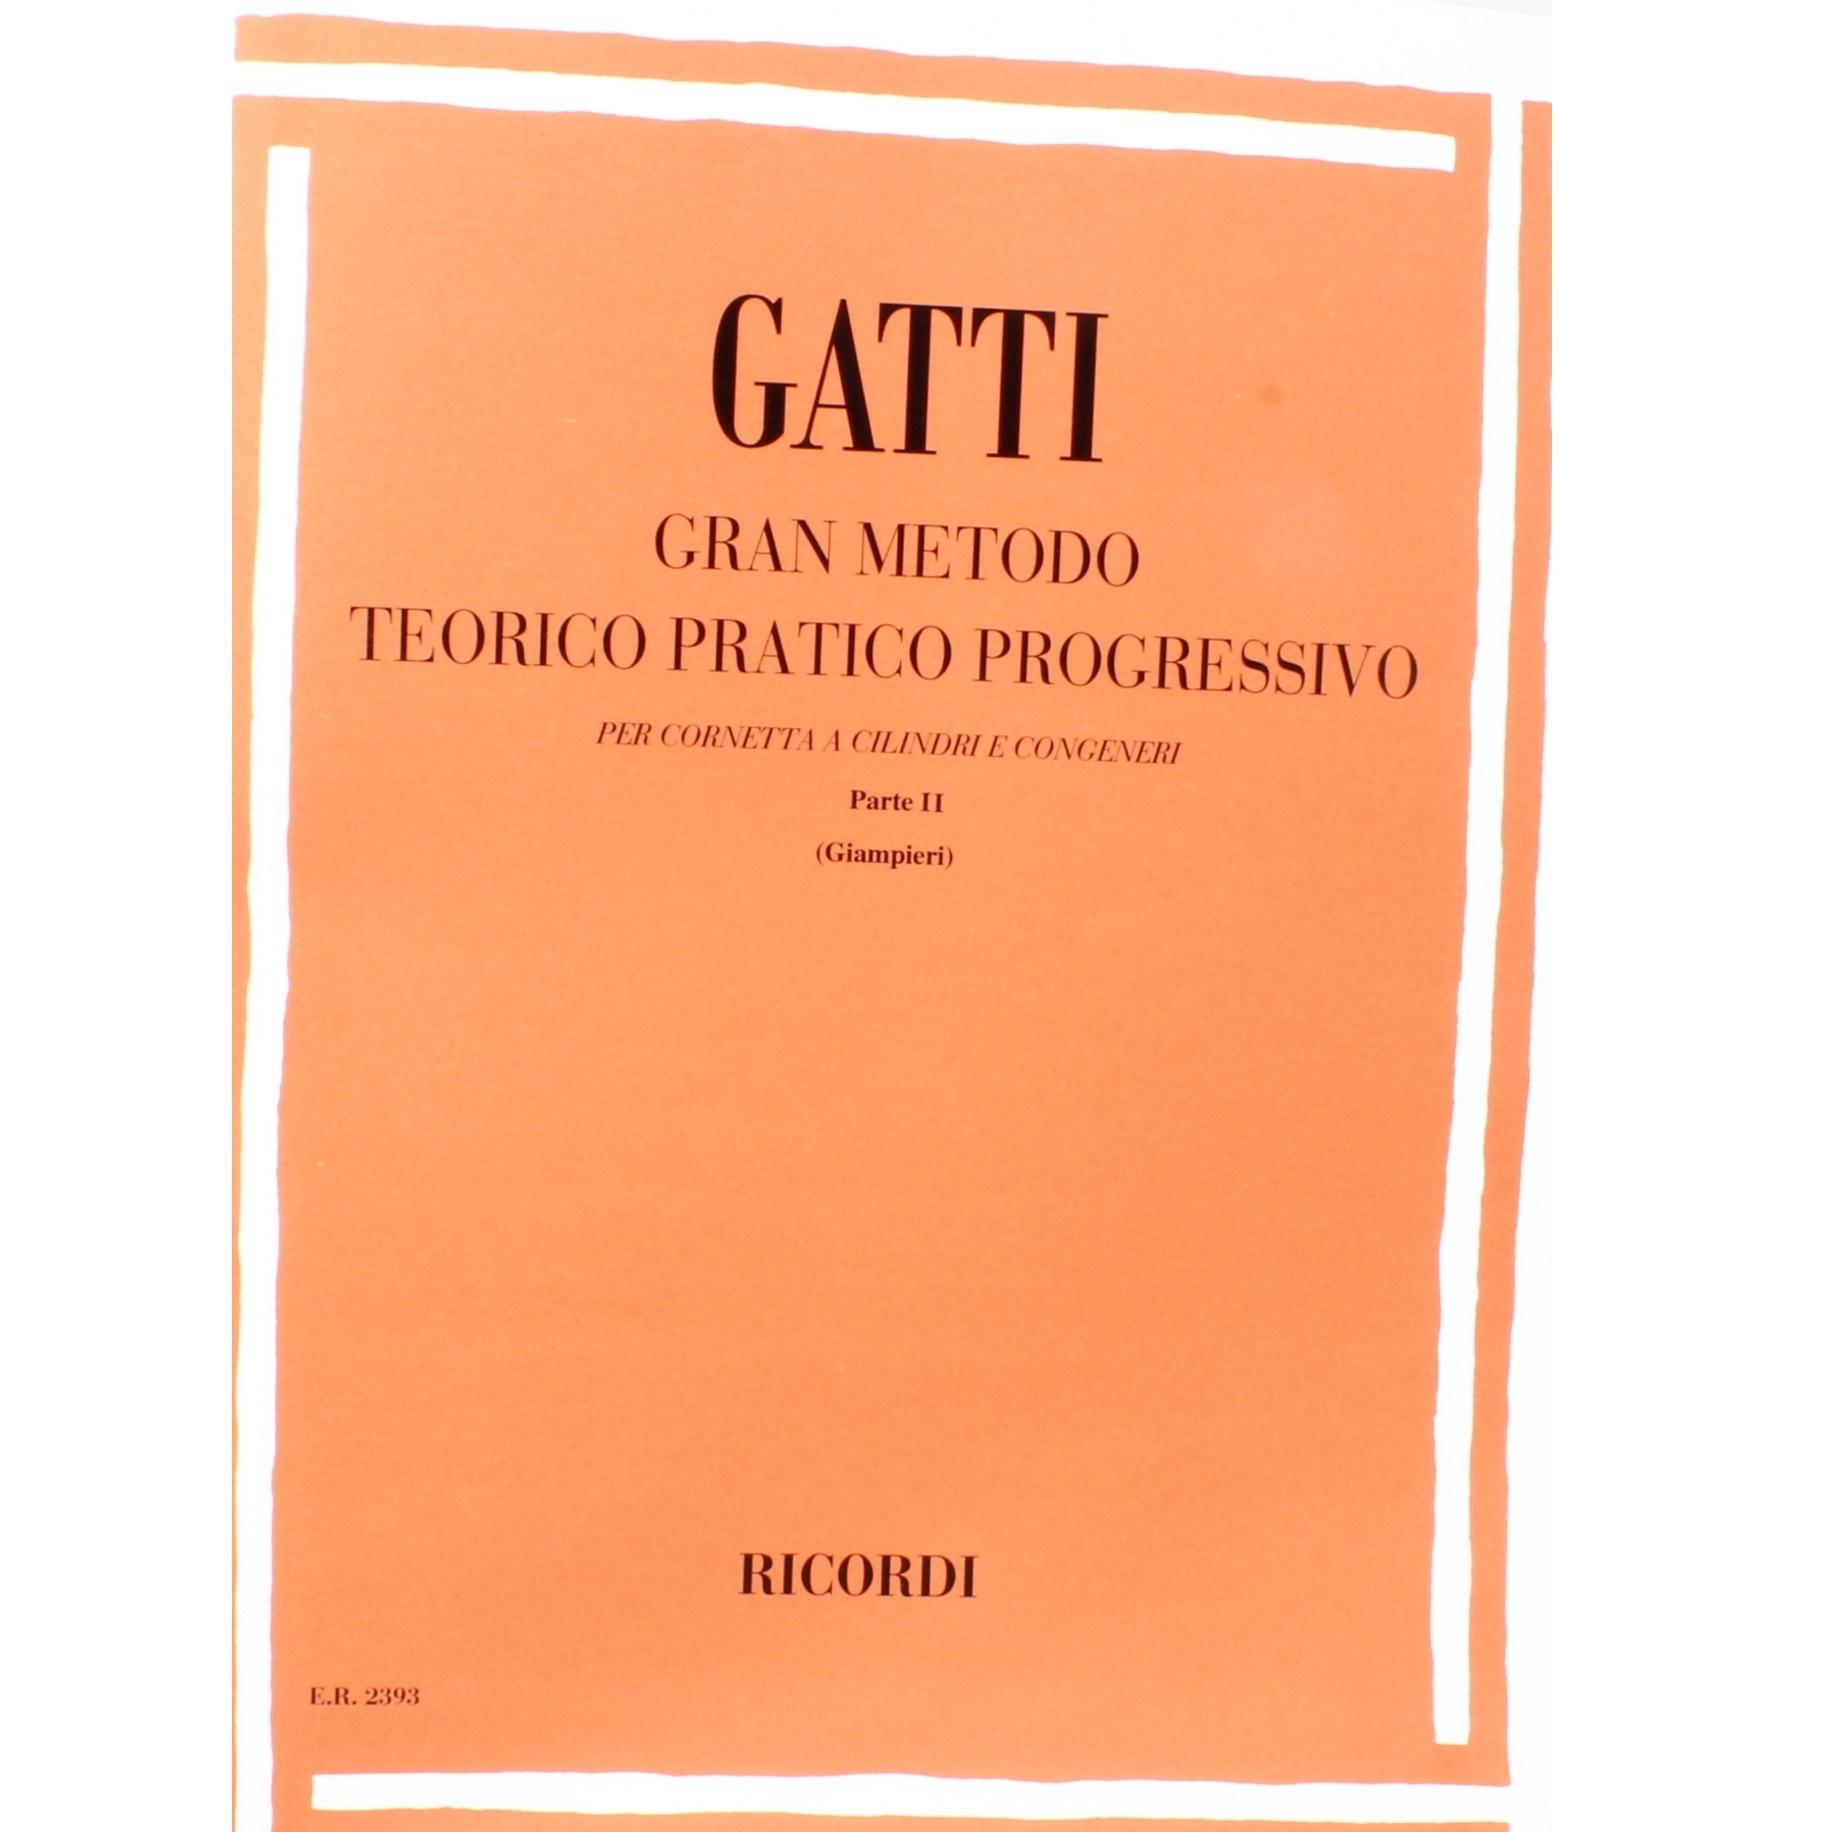 Gatti Gran metodo teorico pratico progressivo per cornettta a cilindri congeneri Parte II (Giampieri) - Ricordi